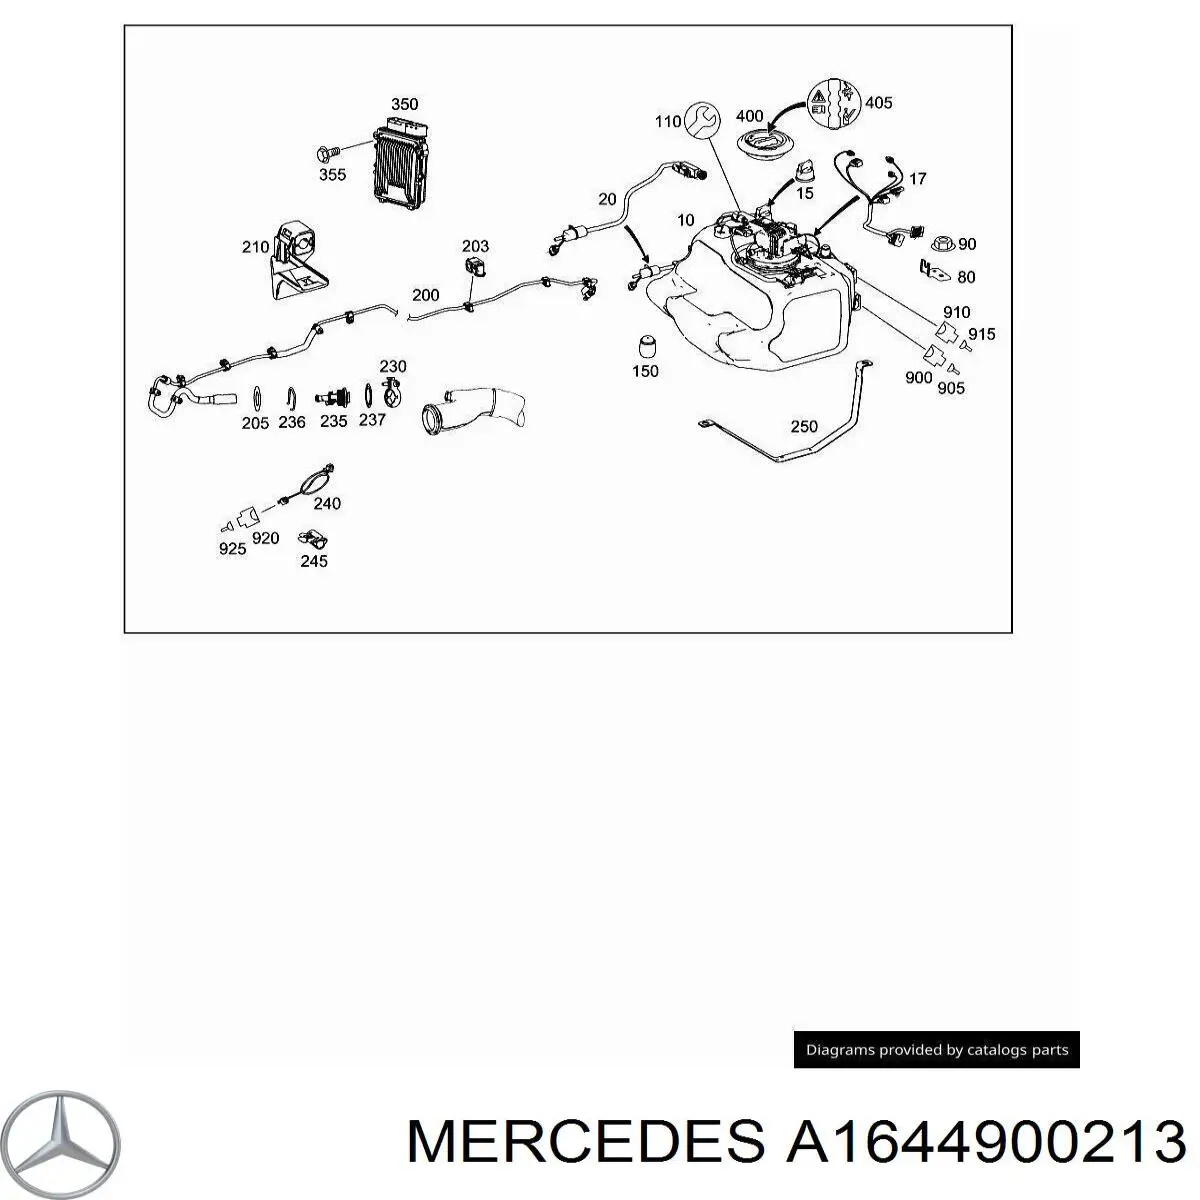 A1644900213 Mercedes injetor de injeção ad blue